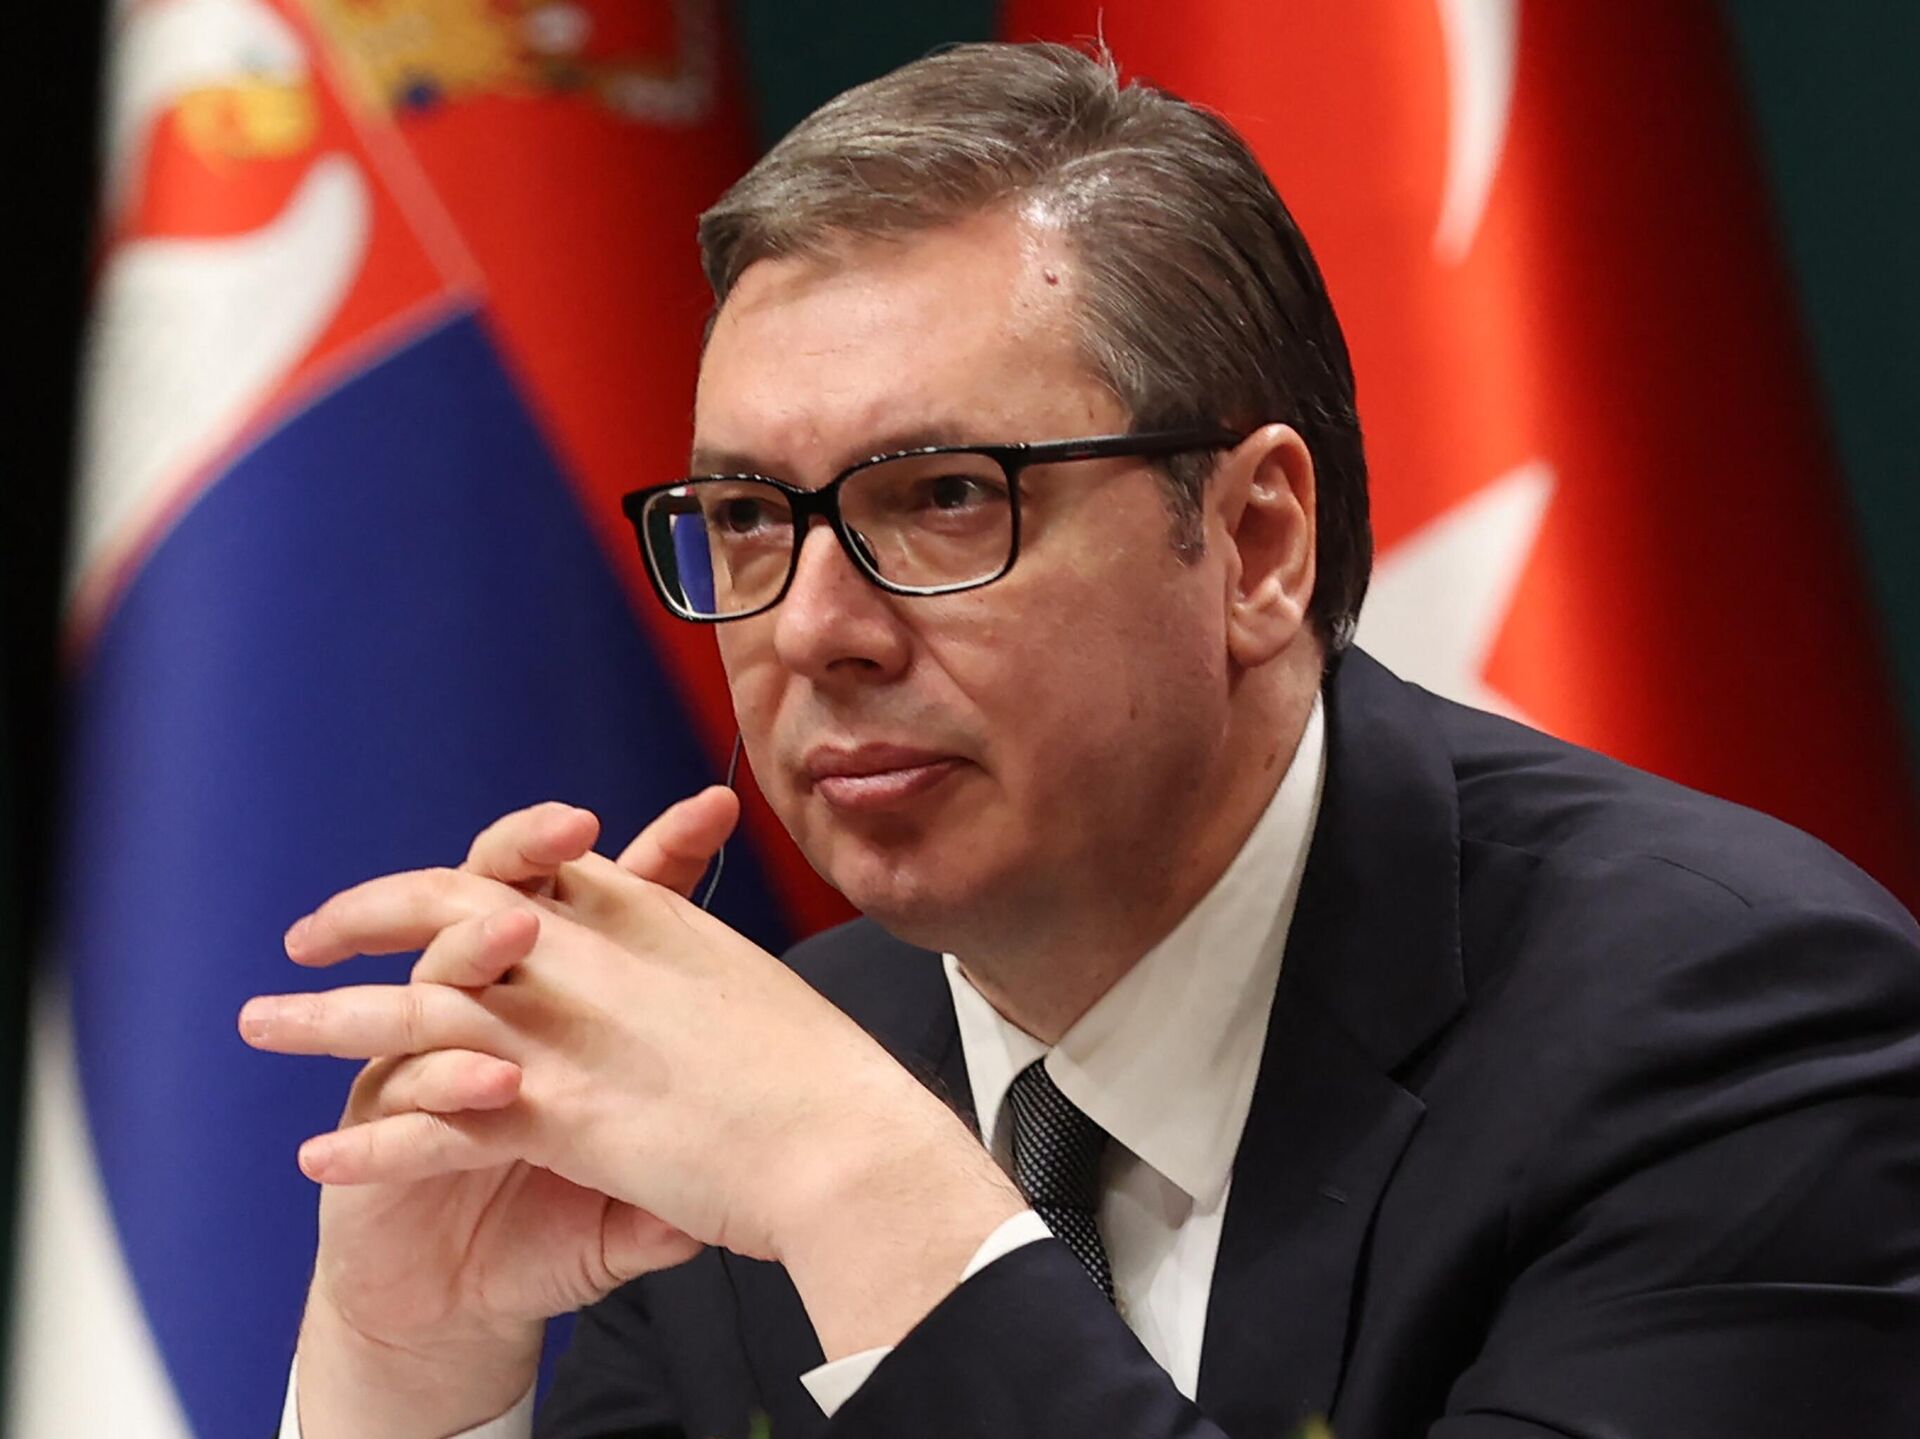 Президент Сербії заявив, що не проти постачання боєприпасів в Україну і вже рік не контактує з Кремлем